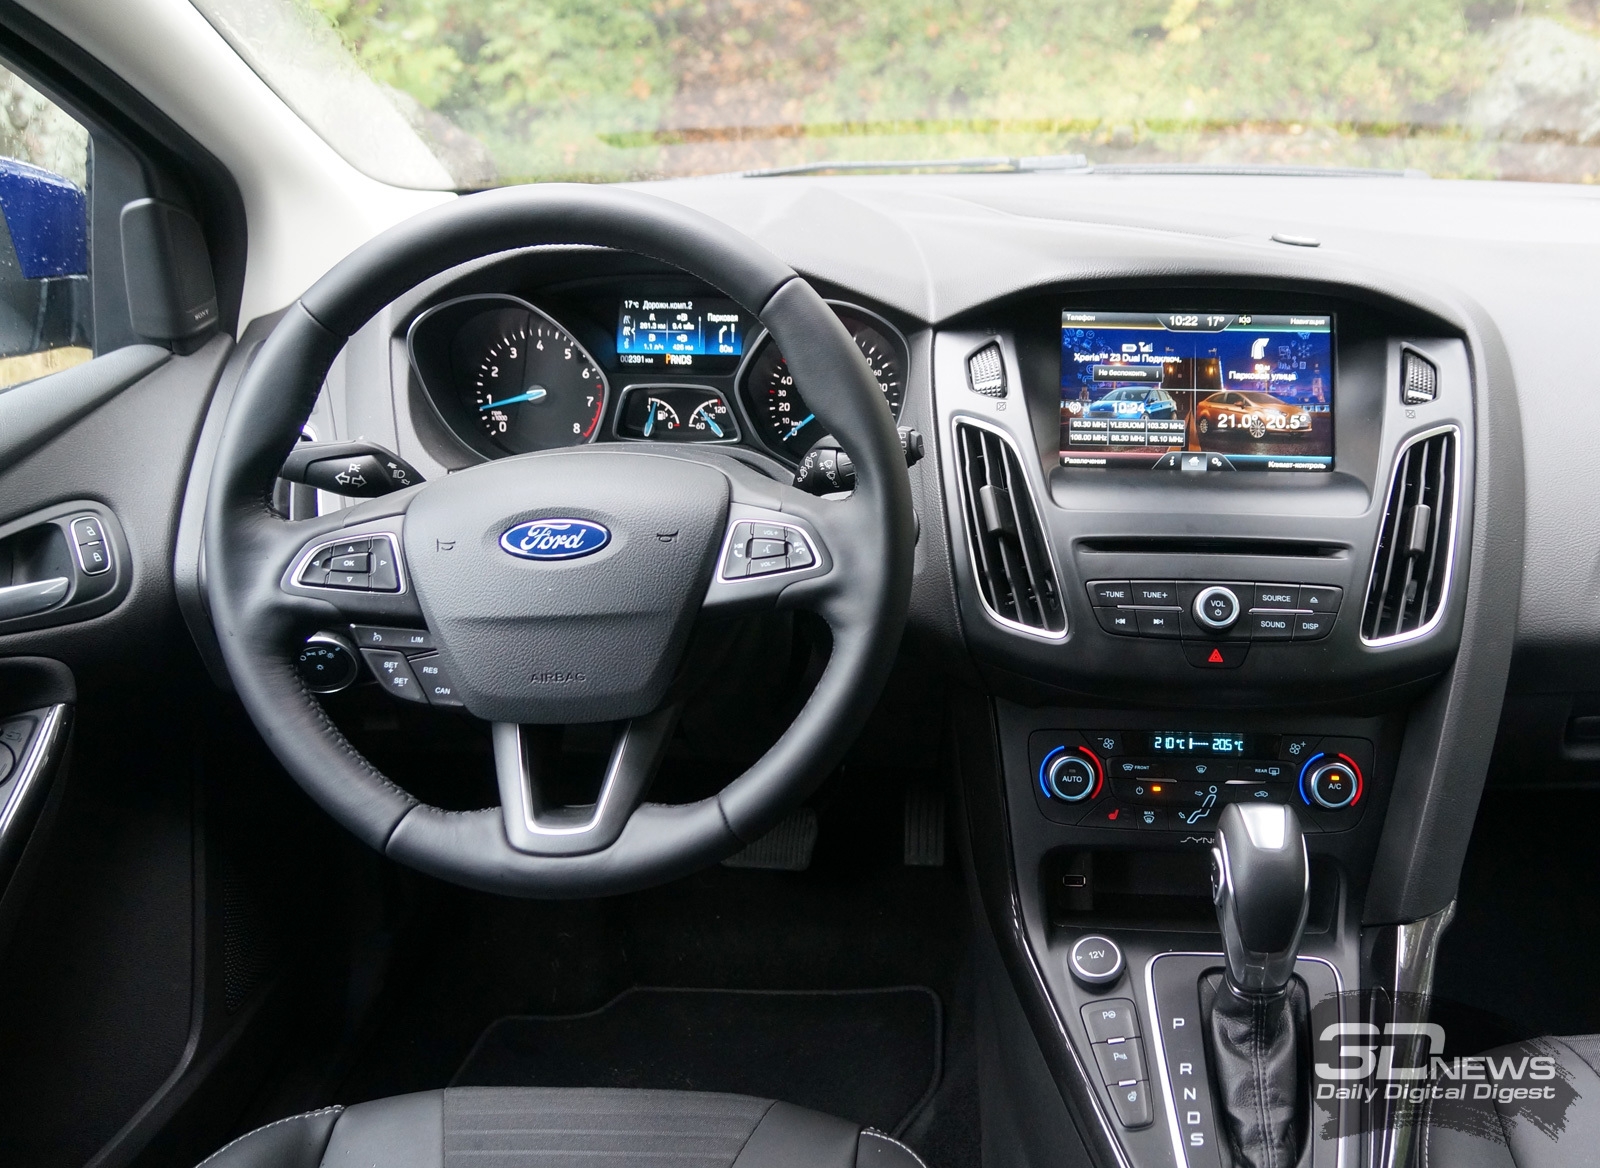 Ford Focus 3 (Форд Фокус 3) отзывы владельцев с ФОТО ...